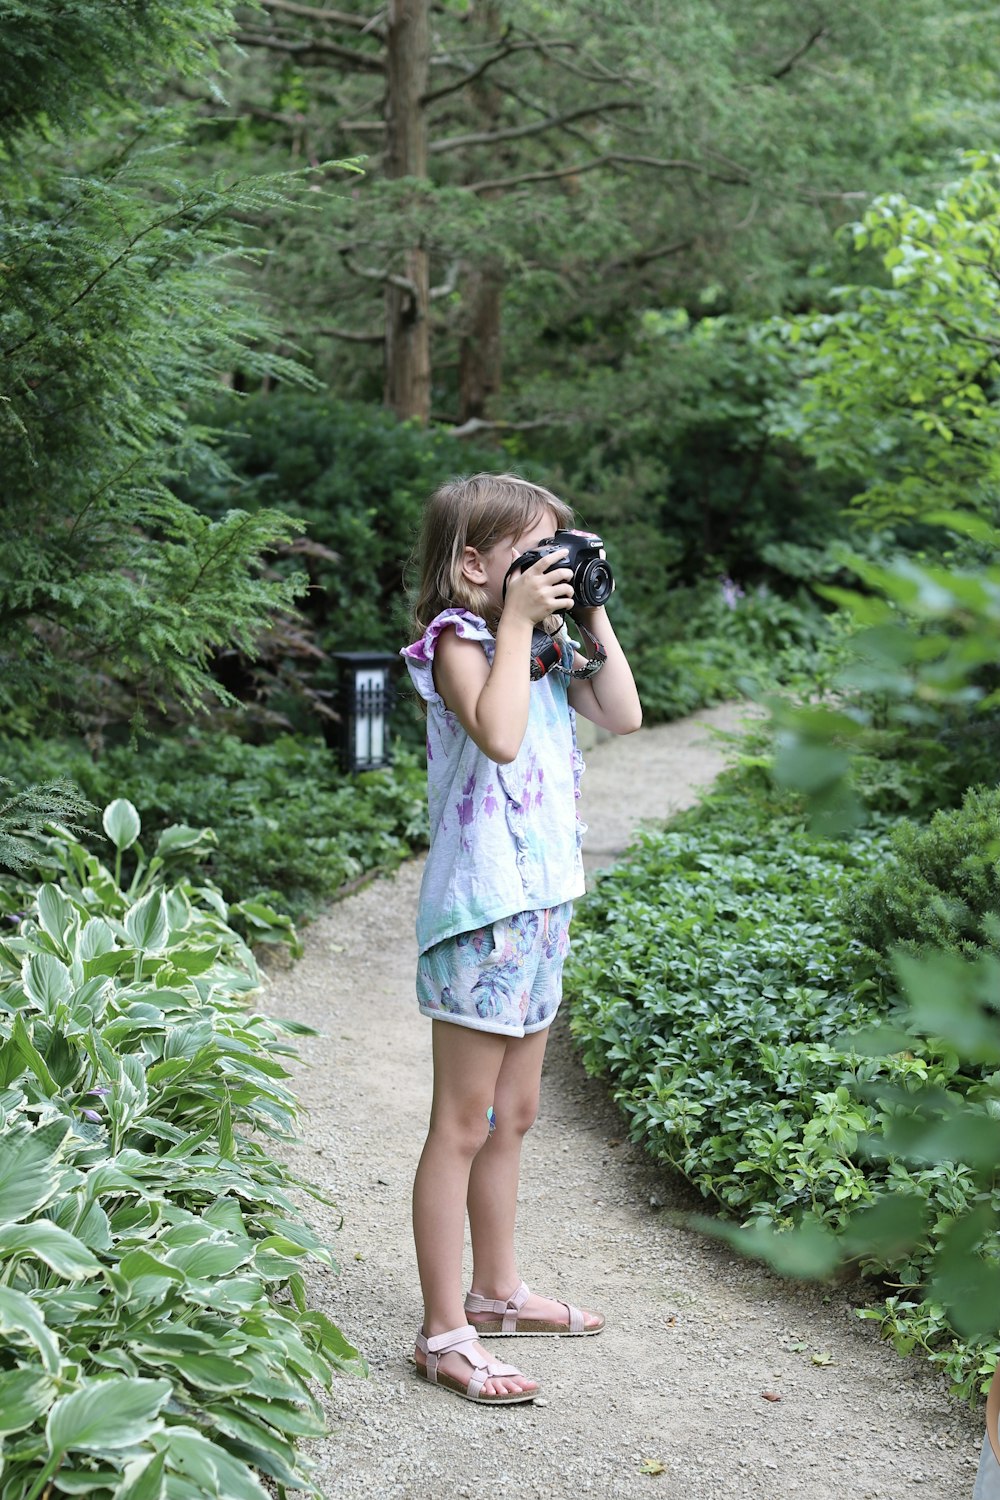 Una niña tomando una foto con una cámara